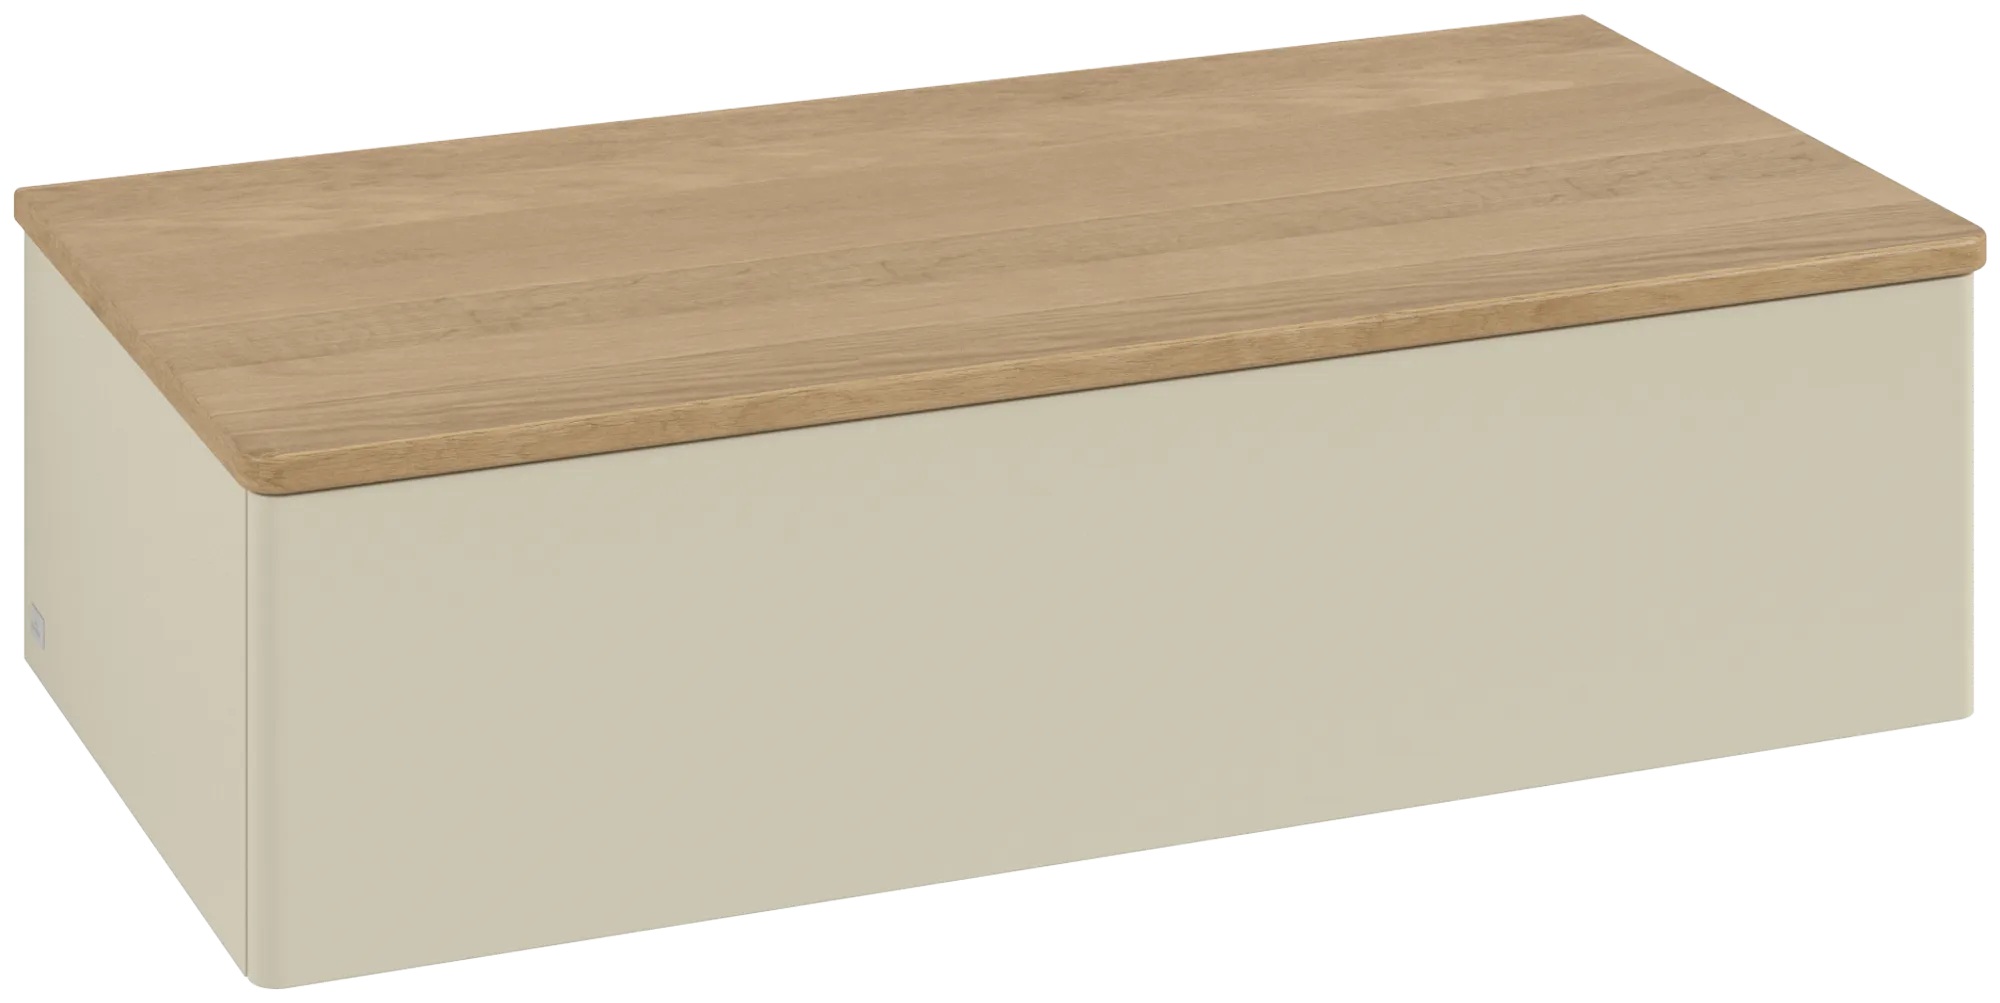 Bild von VILLEROY BOCH Antao Sideboard, 1 Auszug, 1000 x 268 x 500 mm, Front ohne Struktur, Silk Grey Matt Lacquer / Honey Oak #K40001HJ